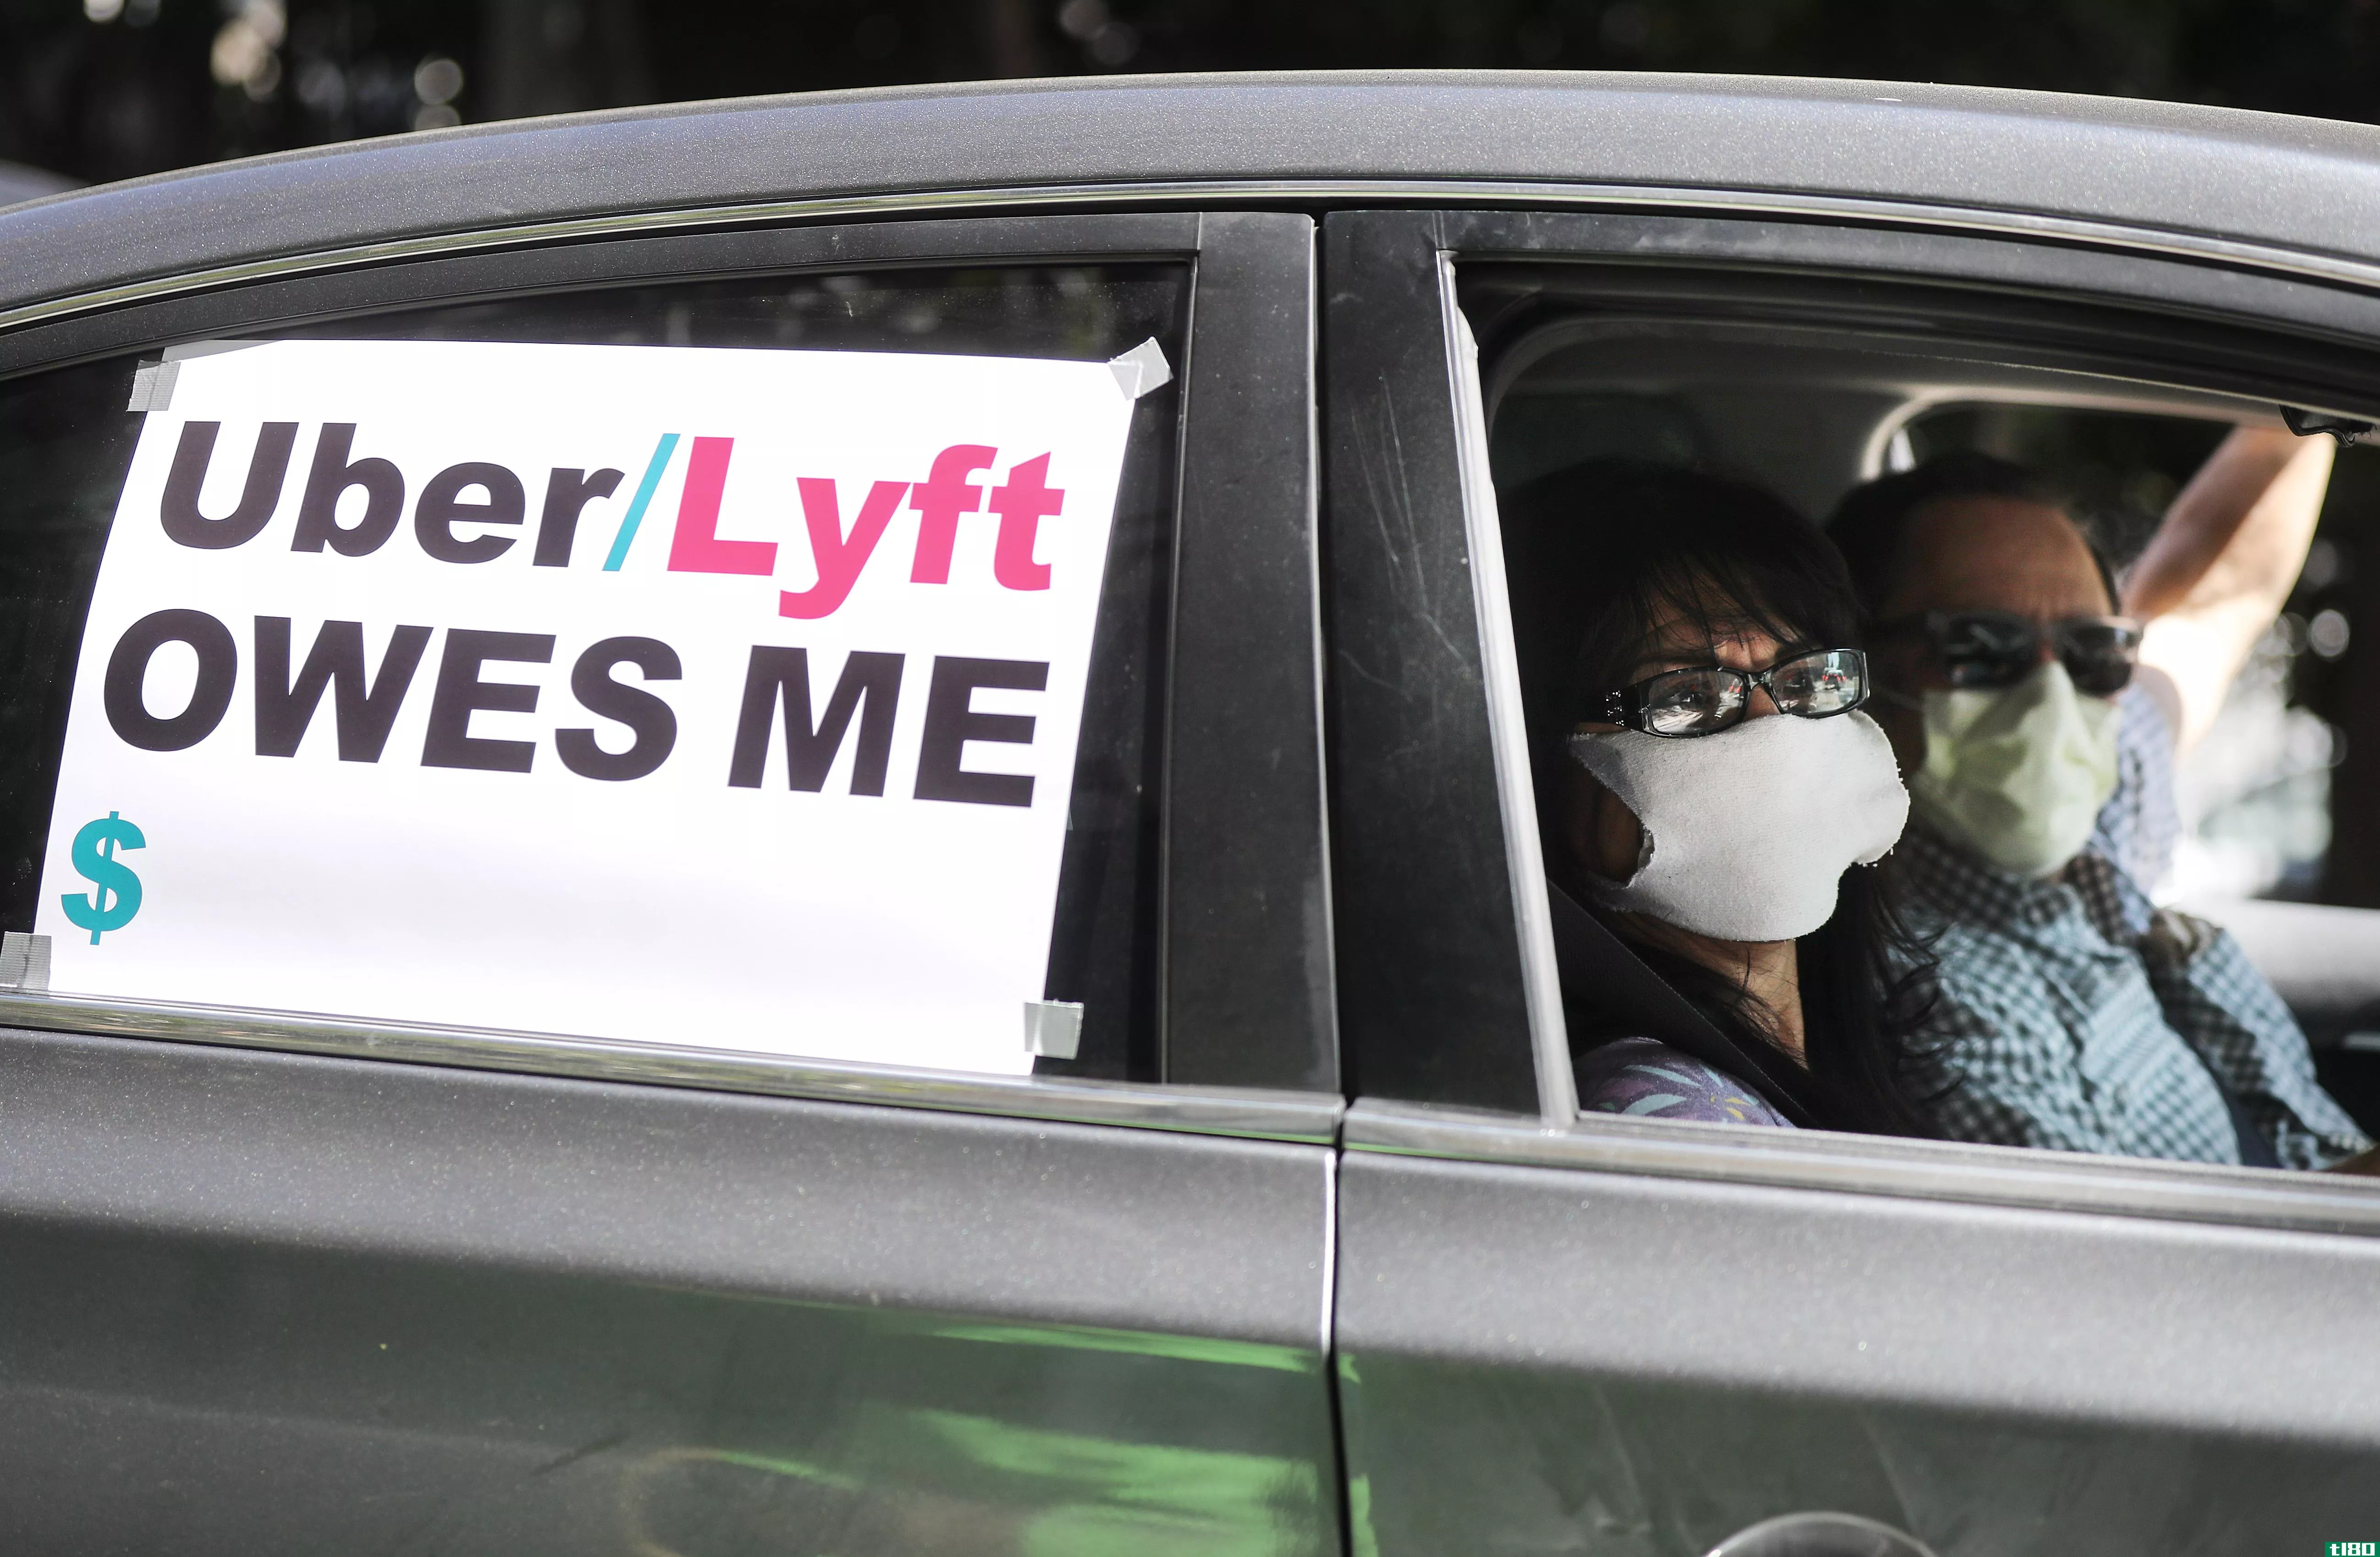 加州试图迫使uber和lyft在数周内将司机重新归类为雇员